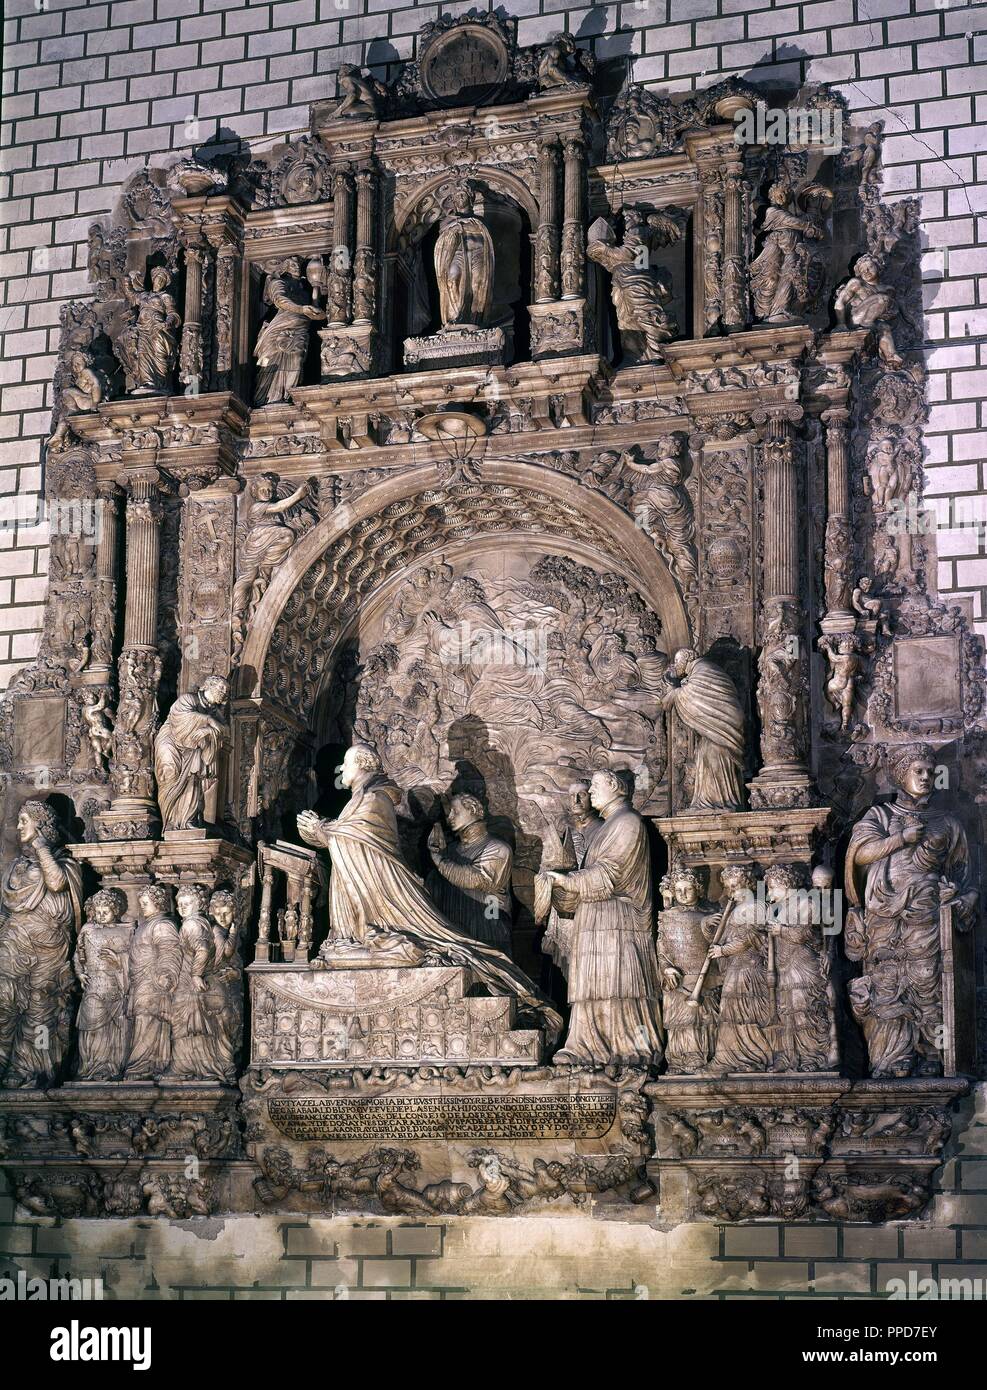 DE SEPULCRO GUTIERRE DE VARGAS - 1535 - ALABASTRO - ESTILO PLATERESCO. Autor: GIRALTE FRANCISCO. Lage: Capilla del Obispo. MADRID. Spanien. Stockfoto